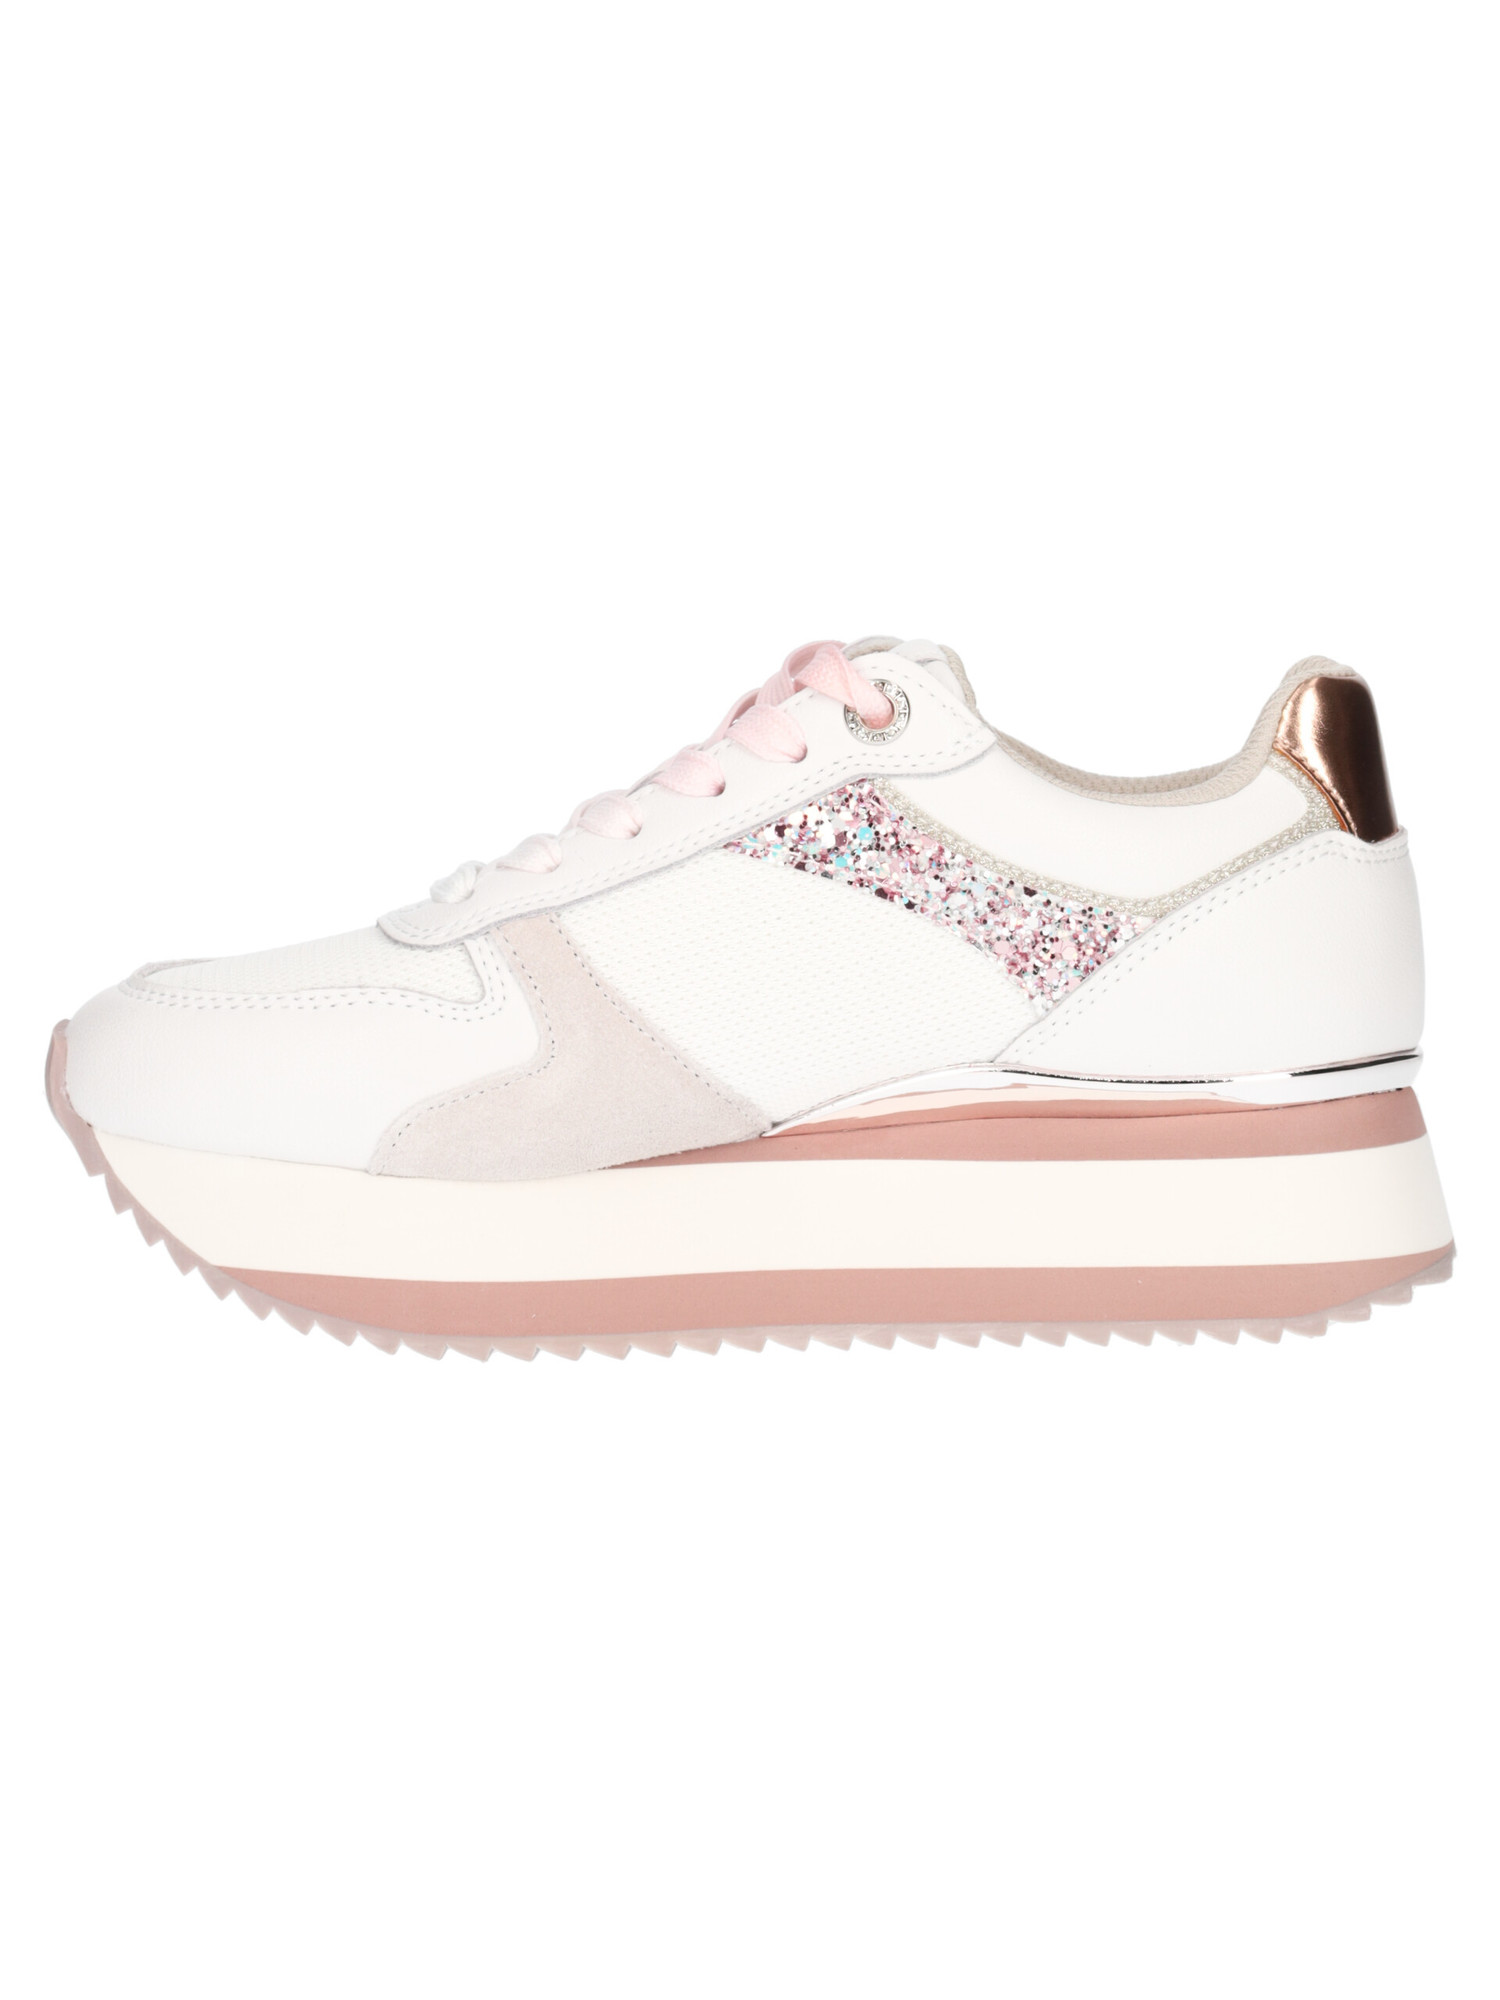 sneaker-platform-lumberjack-lotus-da-donna-bianca